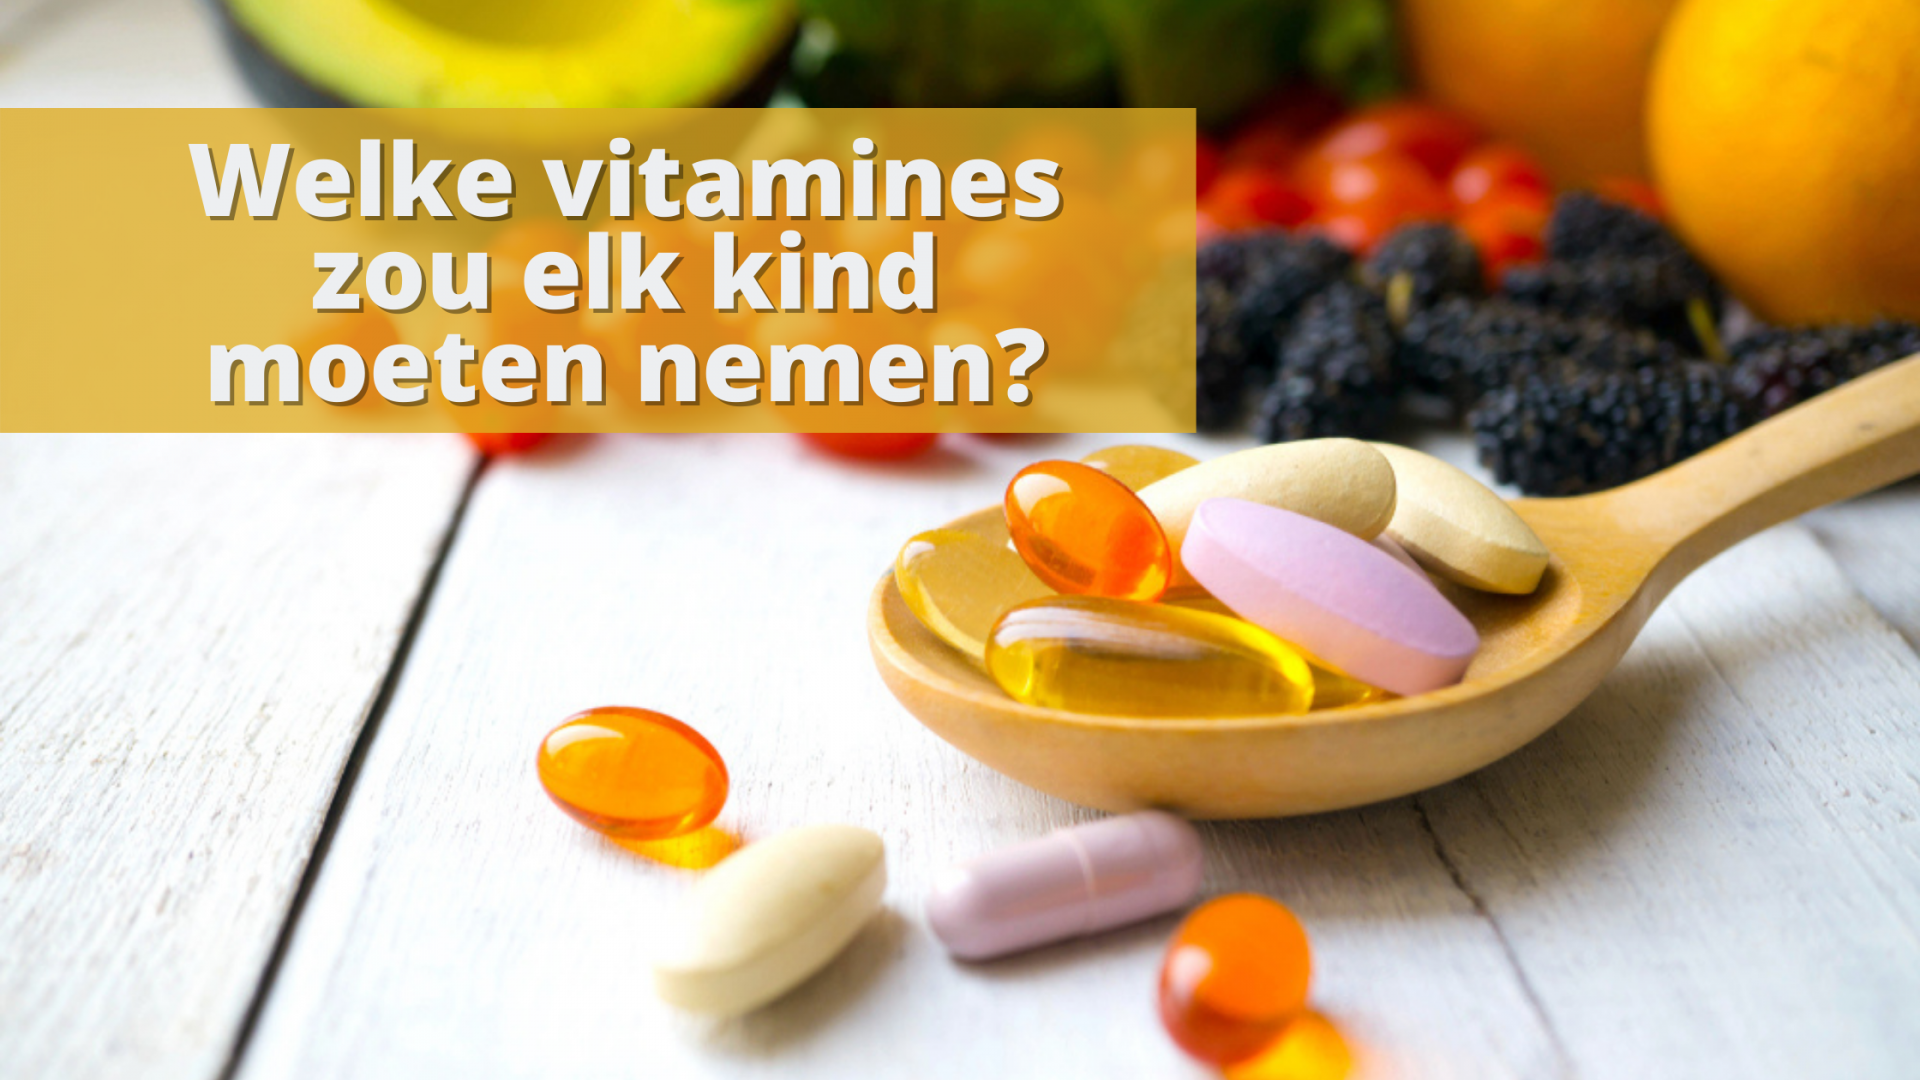 Welke vitamines zou elk kind moeten nemen?